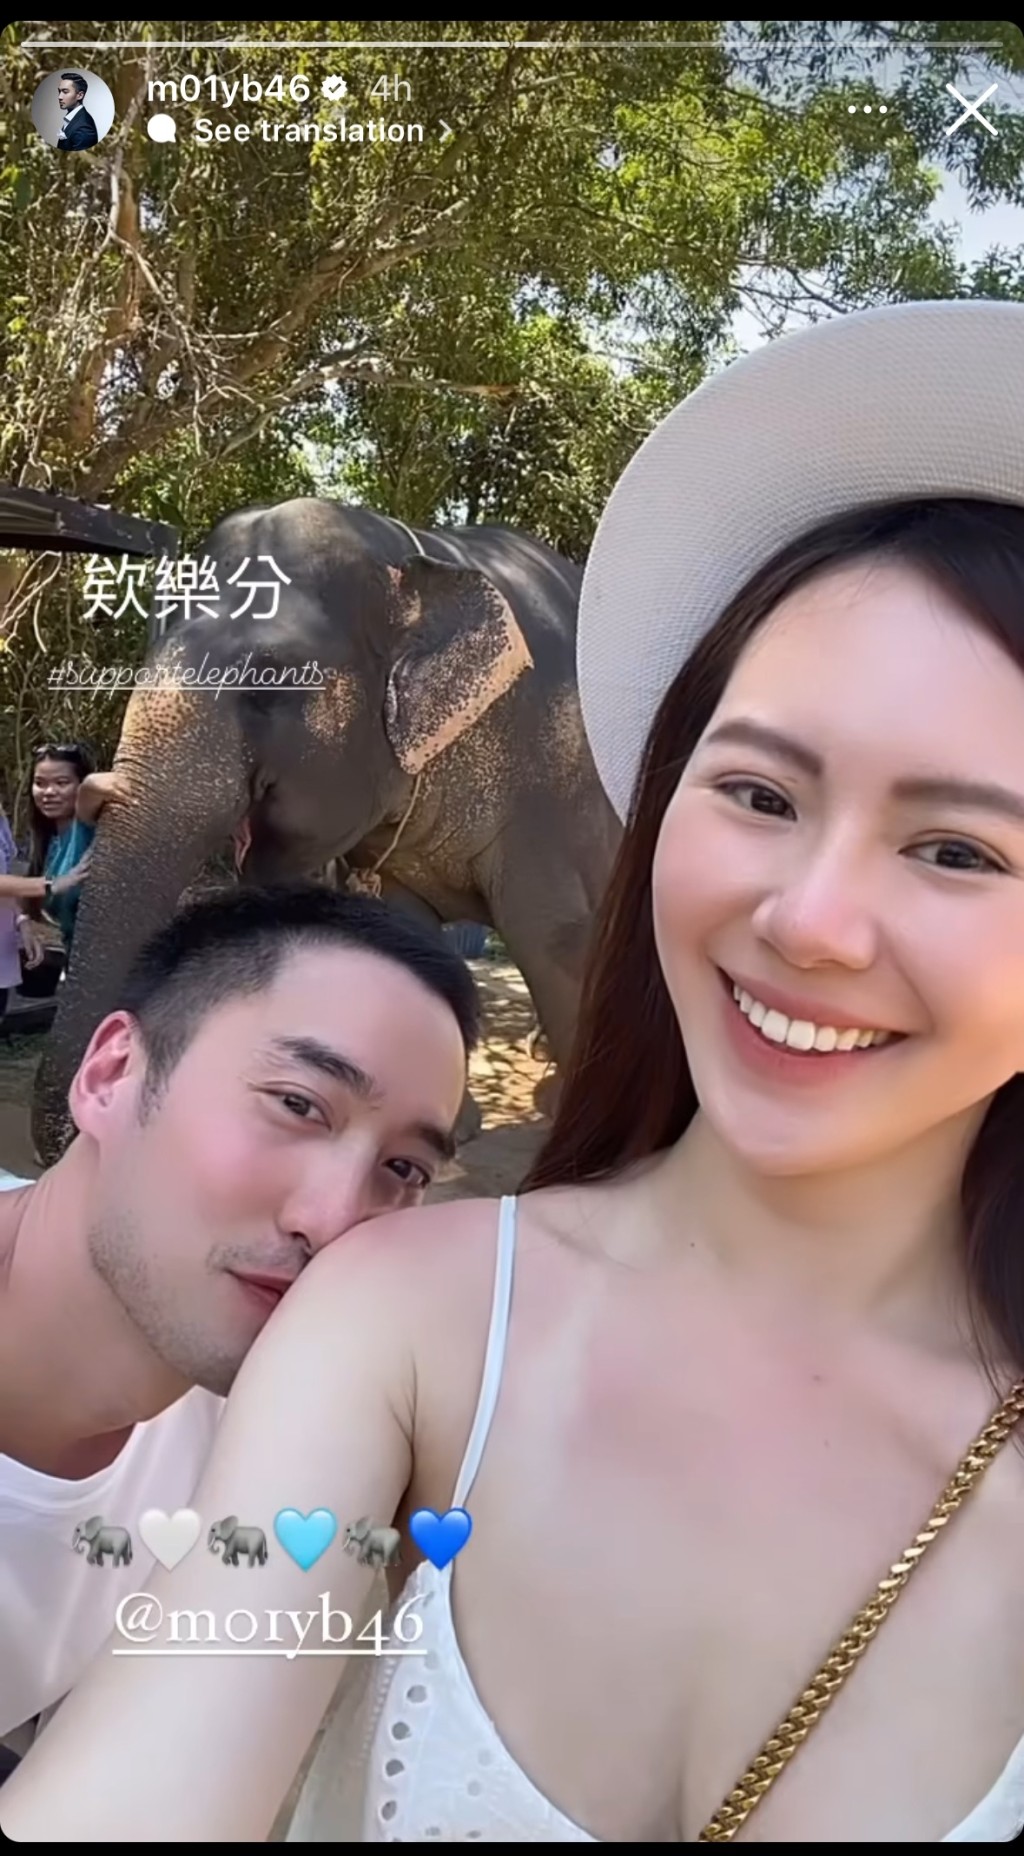 賴弘國亦有分享去睇大象的照片，老婆着上同一條裙。